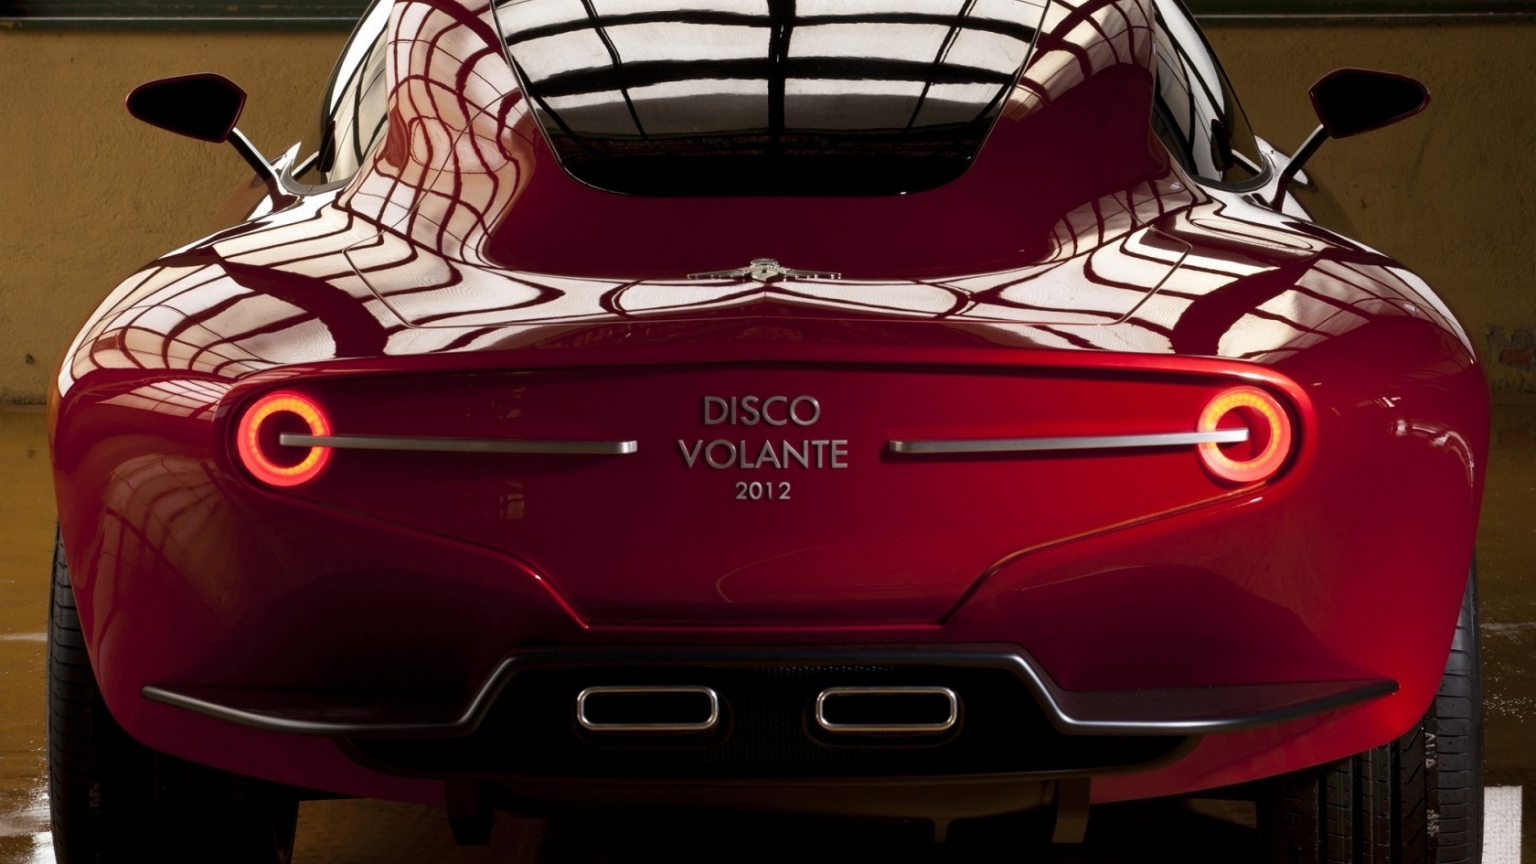 Alfa Romeo Disco Volante 2012 for 1536 x 864 HDTV resolution